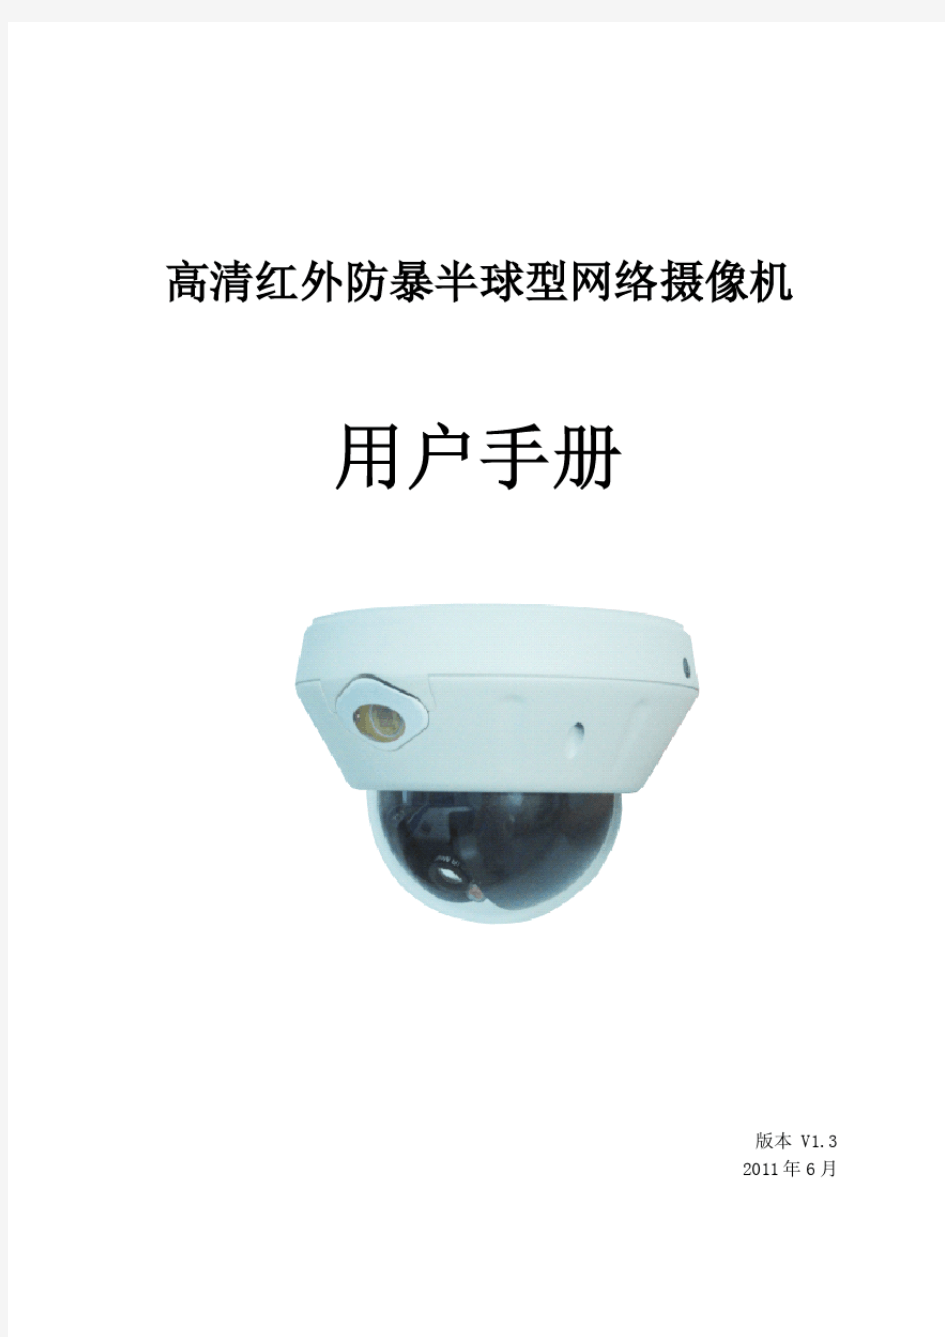 高清红外防暴半球型网络摄像机用户手册V1.3(0615)